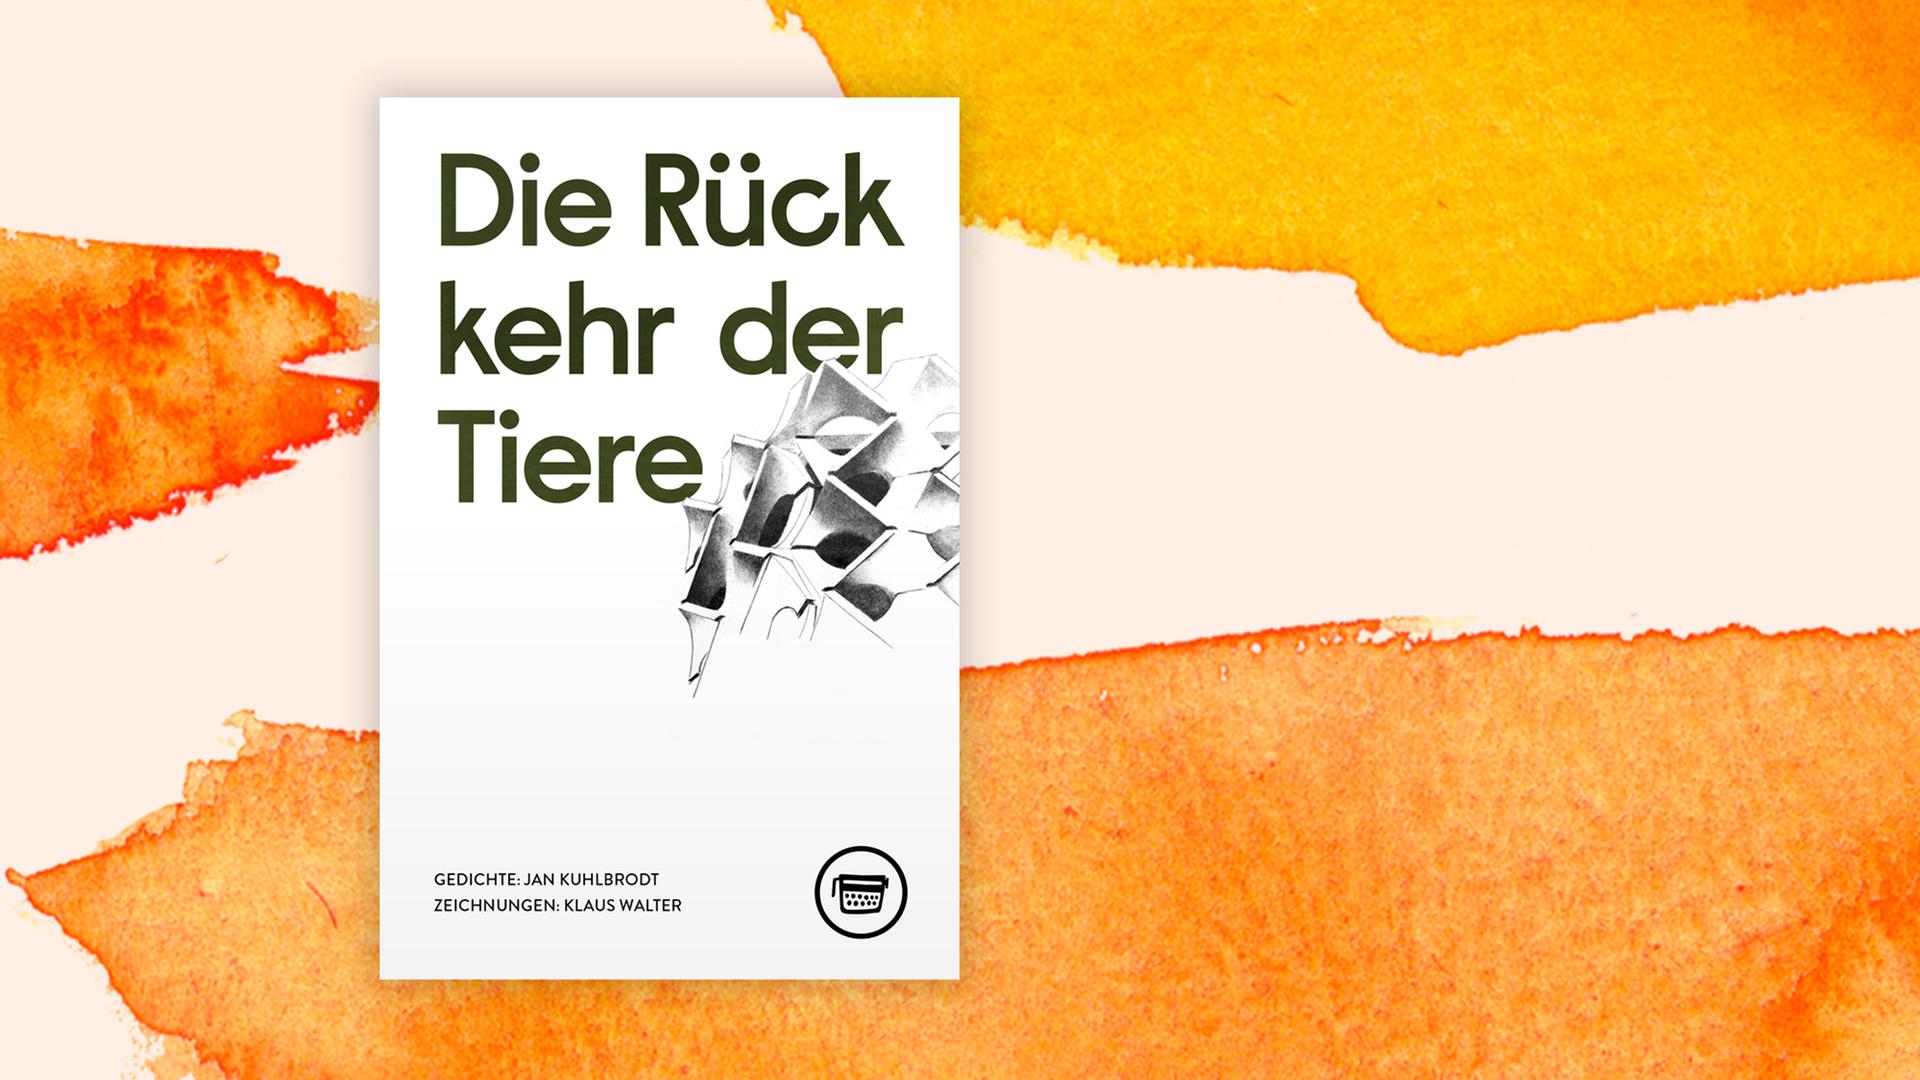 Buchcover Jan Kuhlbrodt: "Die Rückkehr der Tiere"